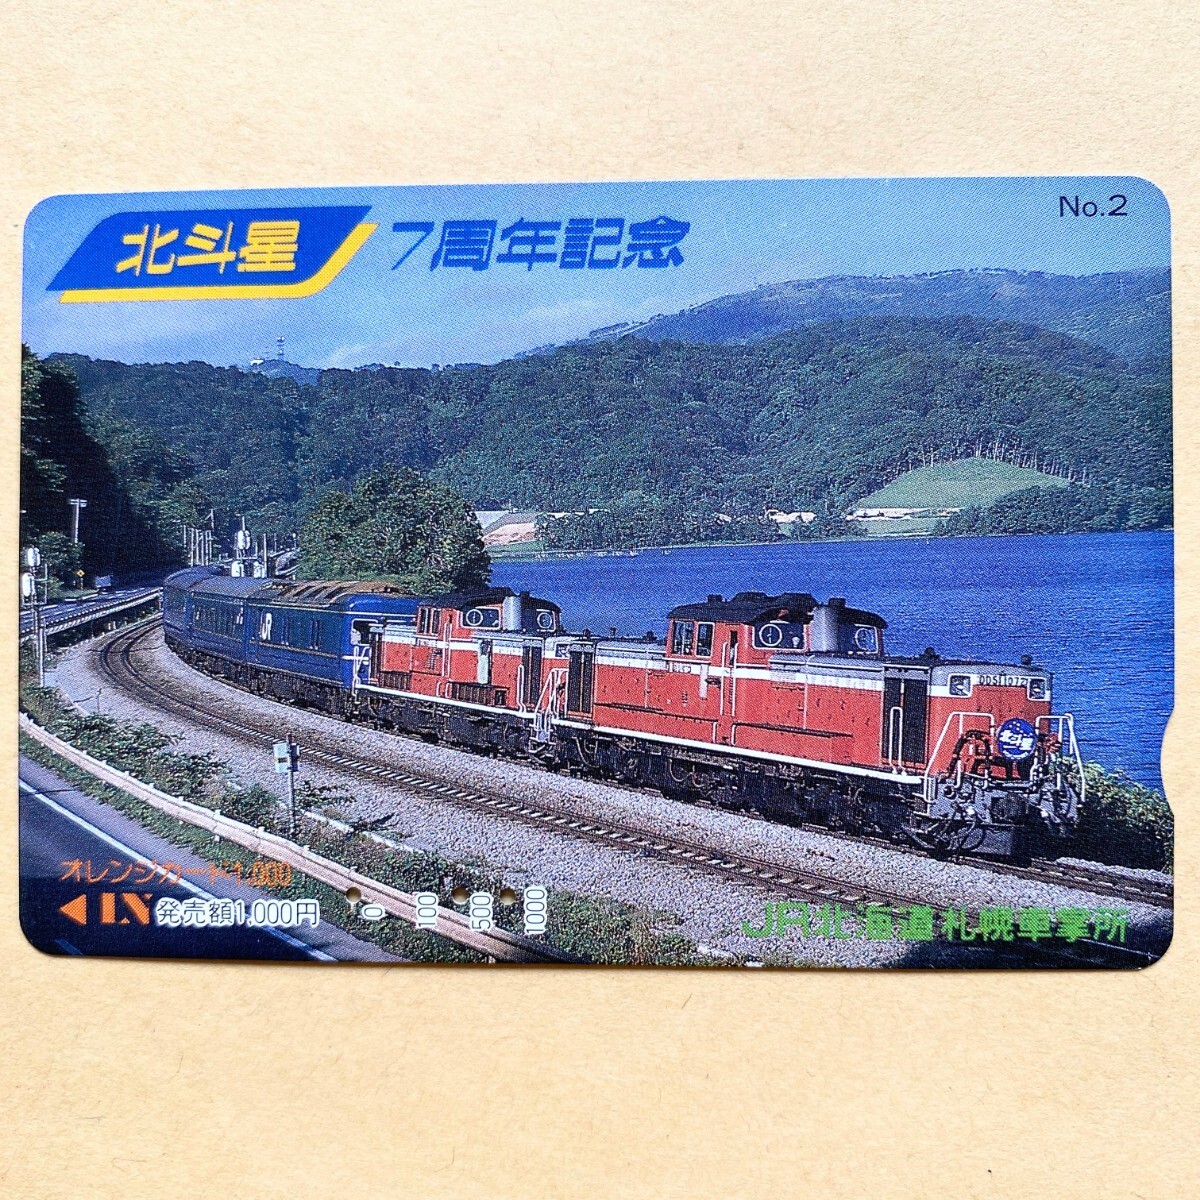 【使用済】 オレンジカード JR北海道 北斗星7周年記念 No.2_画像1